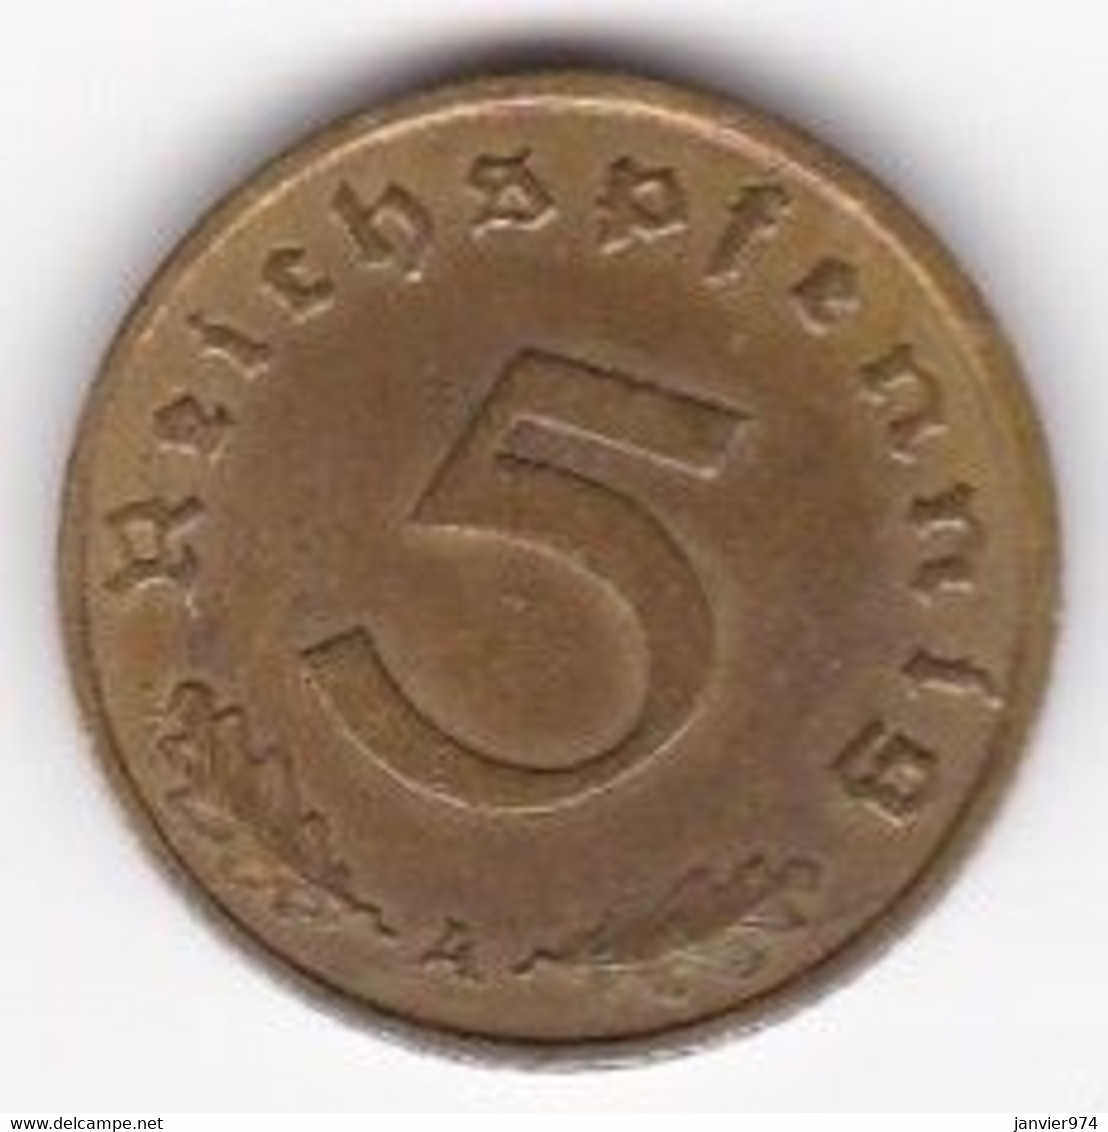 5 Reichspfennig 1937 A (BERLIN). Bronze-aluminium - 5 Reichspfennig